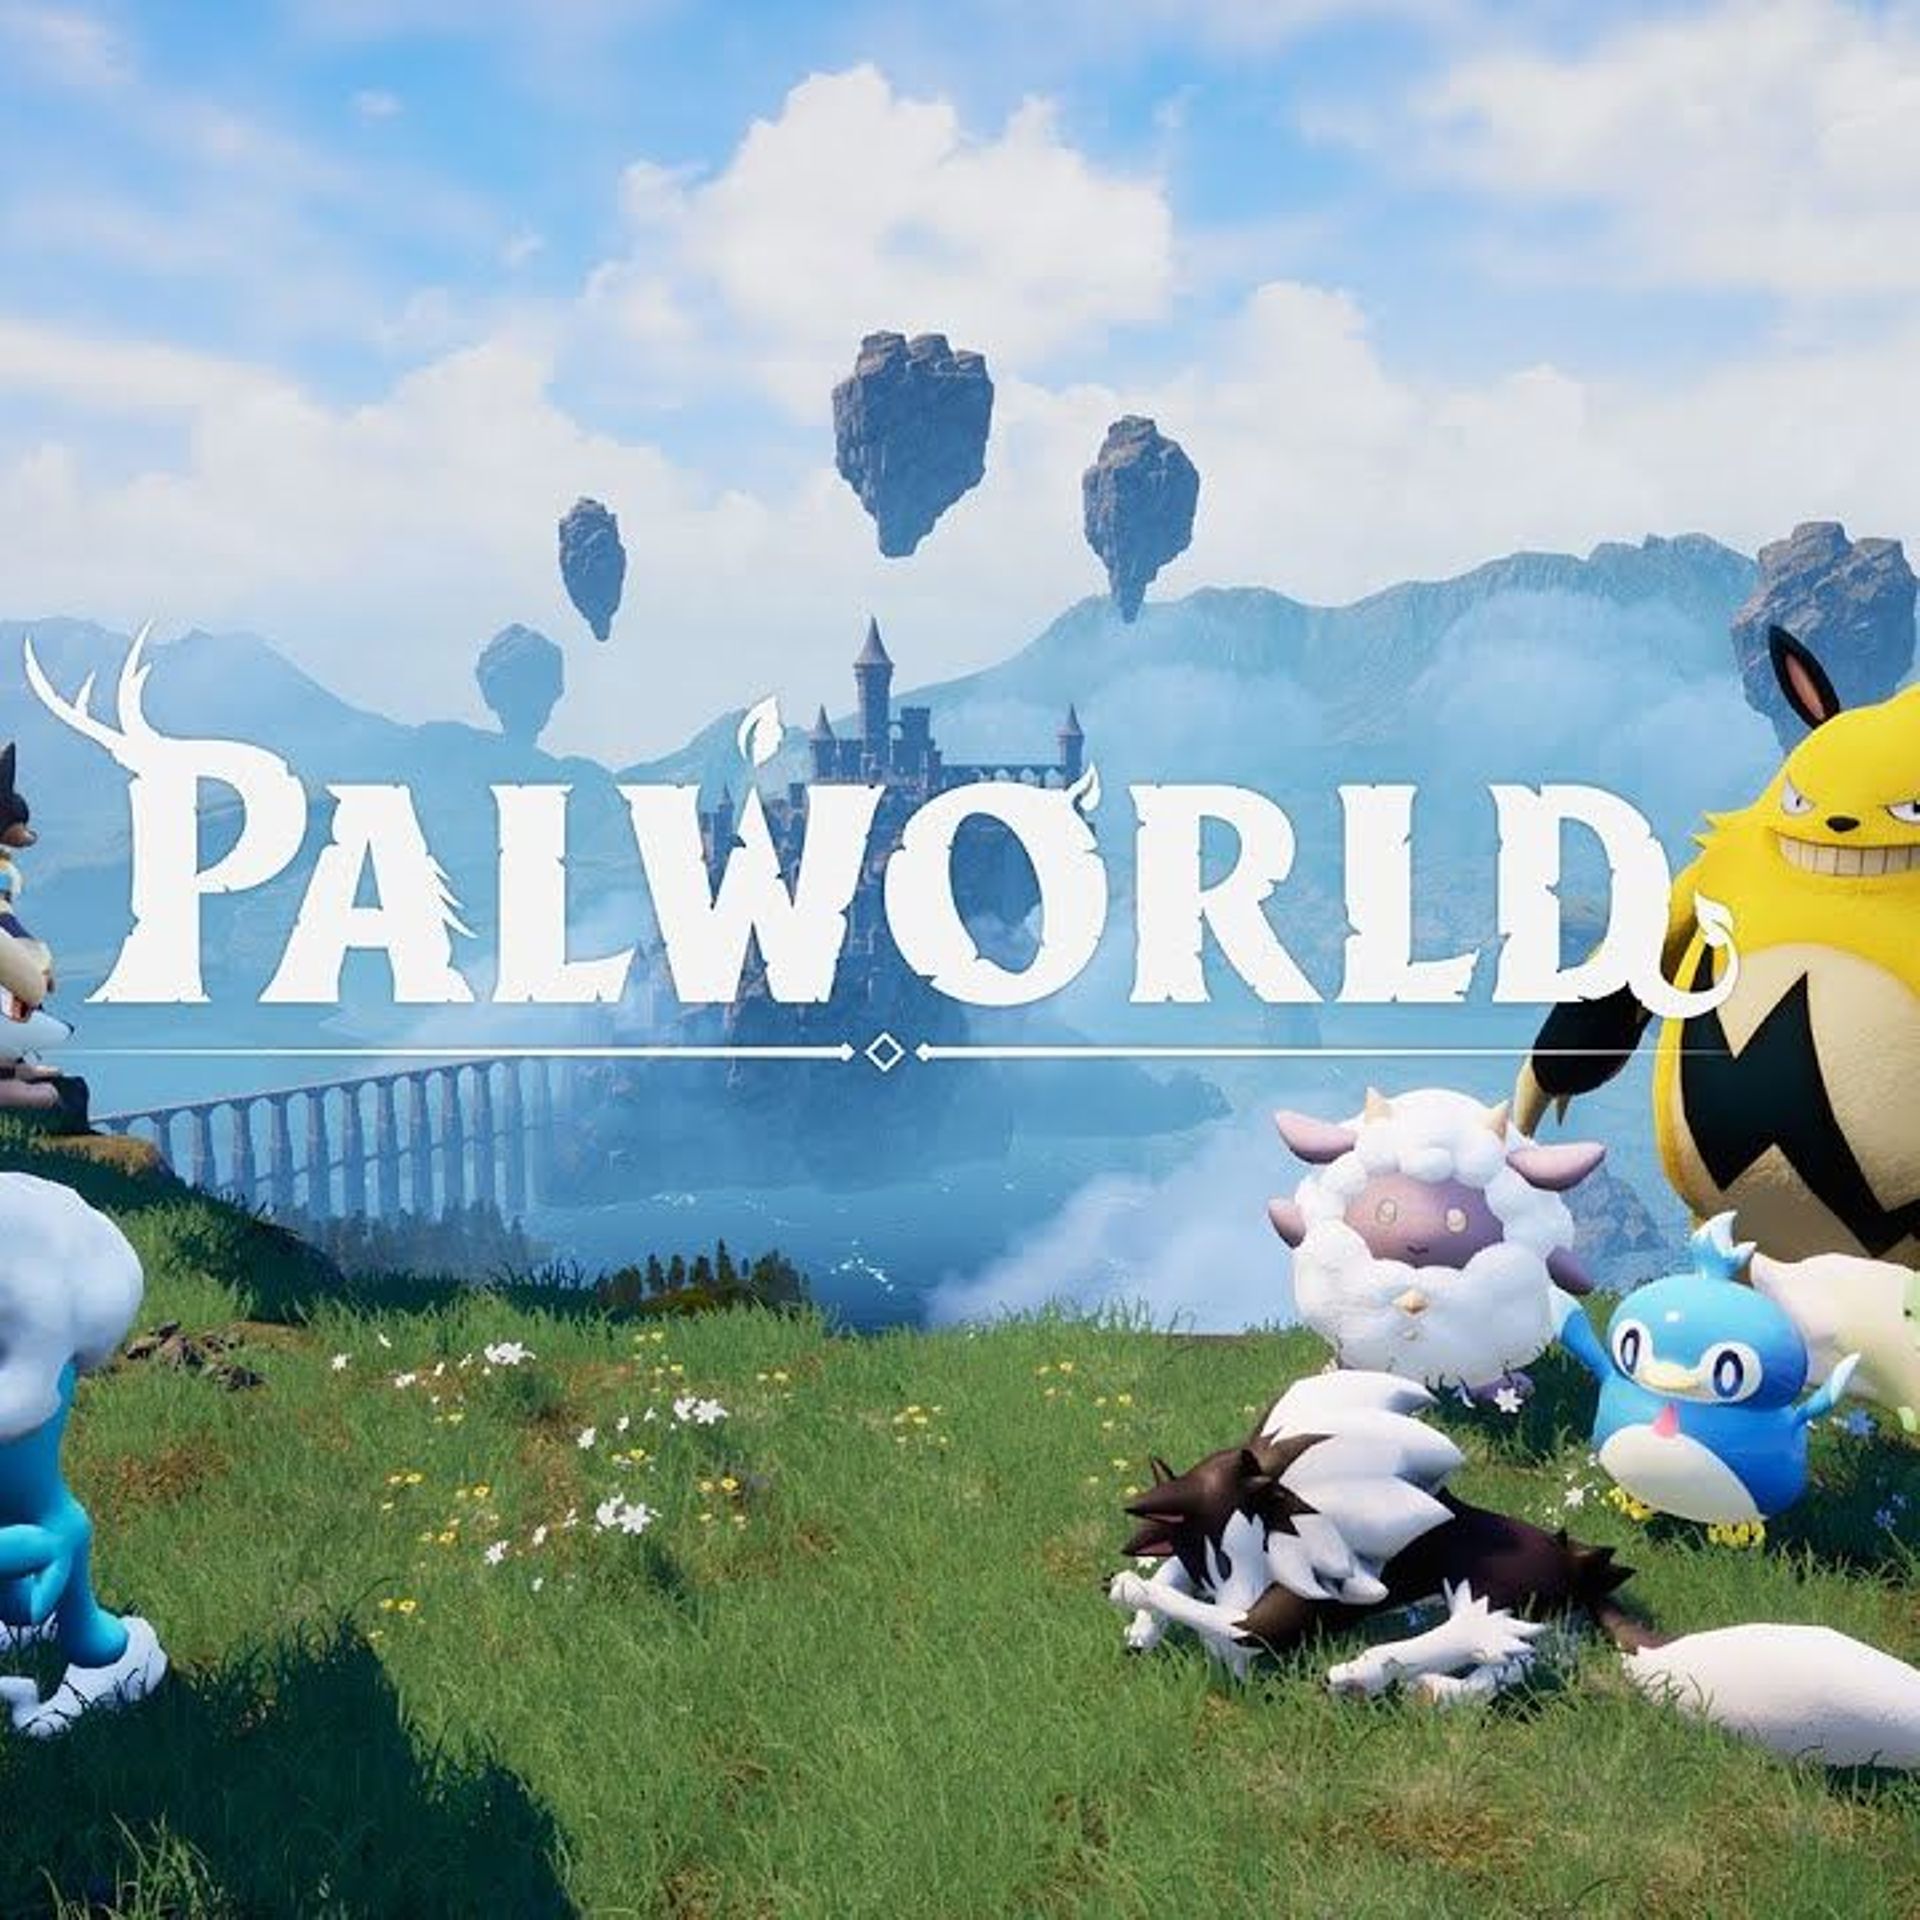 Palworld, un jeu de type Pokémon mais avec des armes, débarque sur